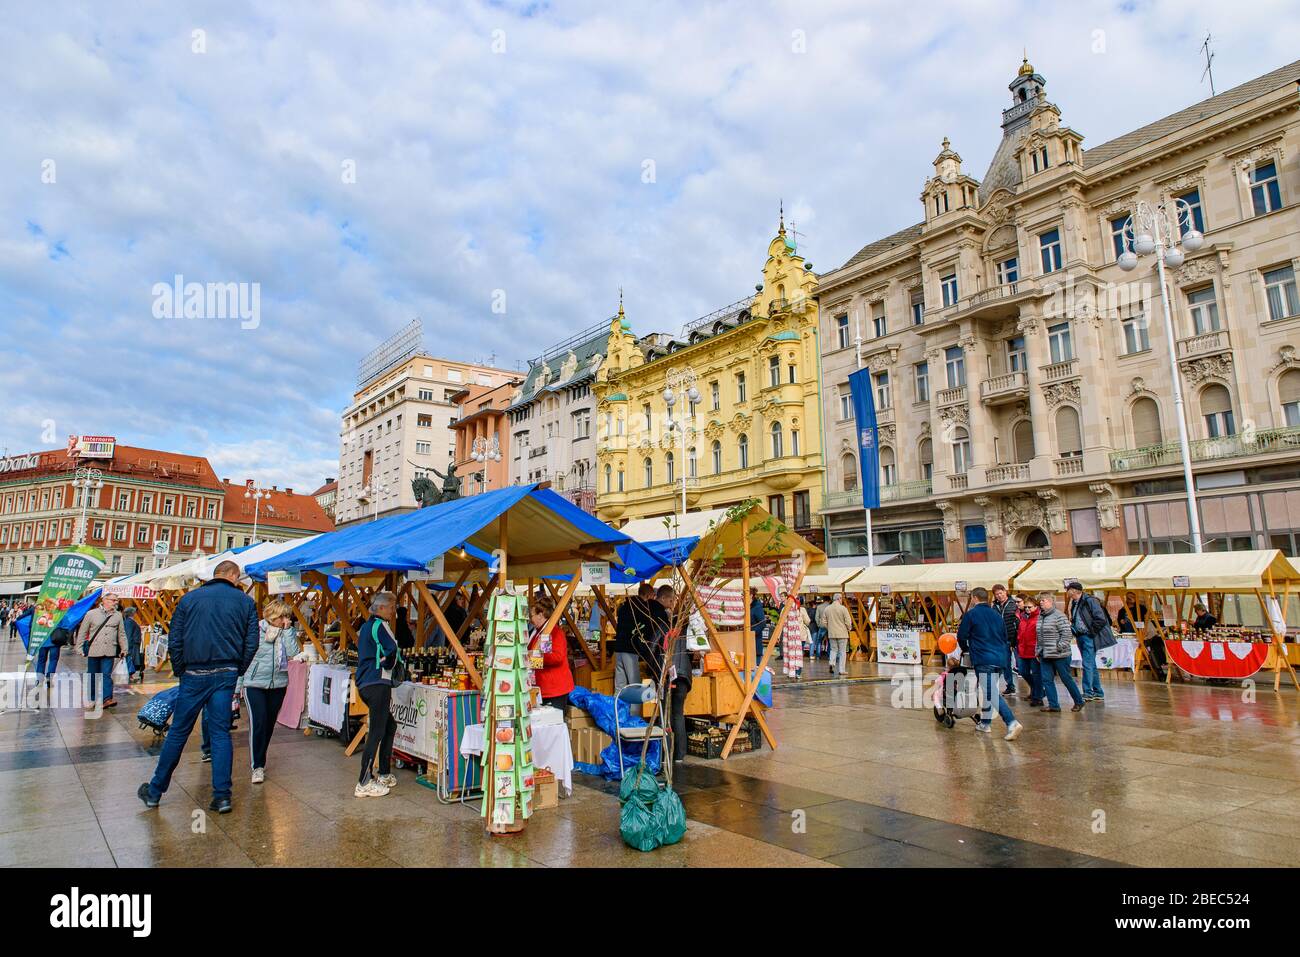 Le marché de la place Ban Jelačić, la place centrale de la ville de Zagreb, Croatie Banque D'Images